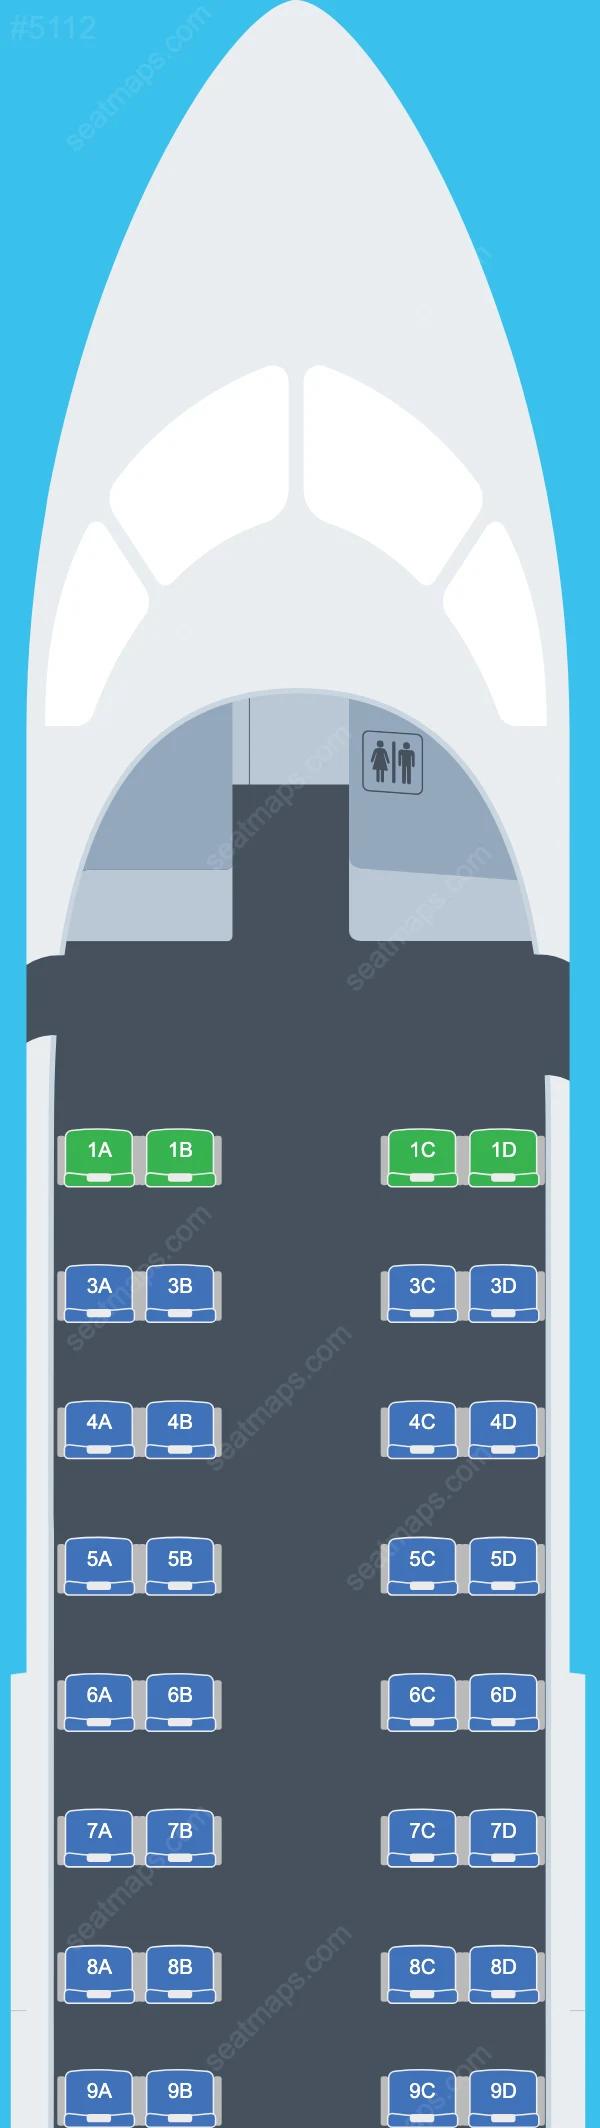 Petroleum Air Services Bombardier Q300 Seat Maps Q300